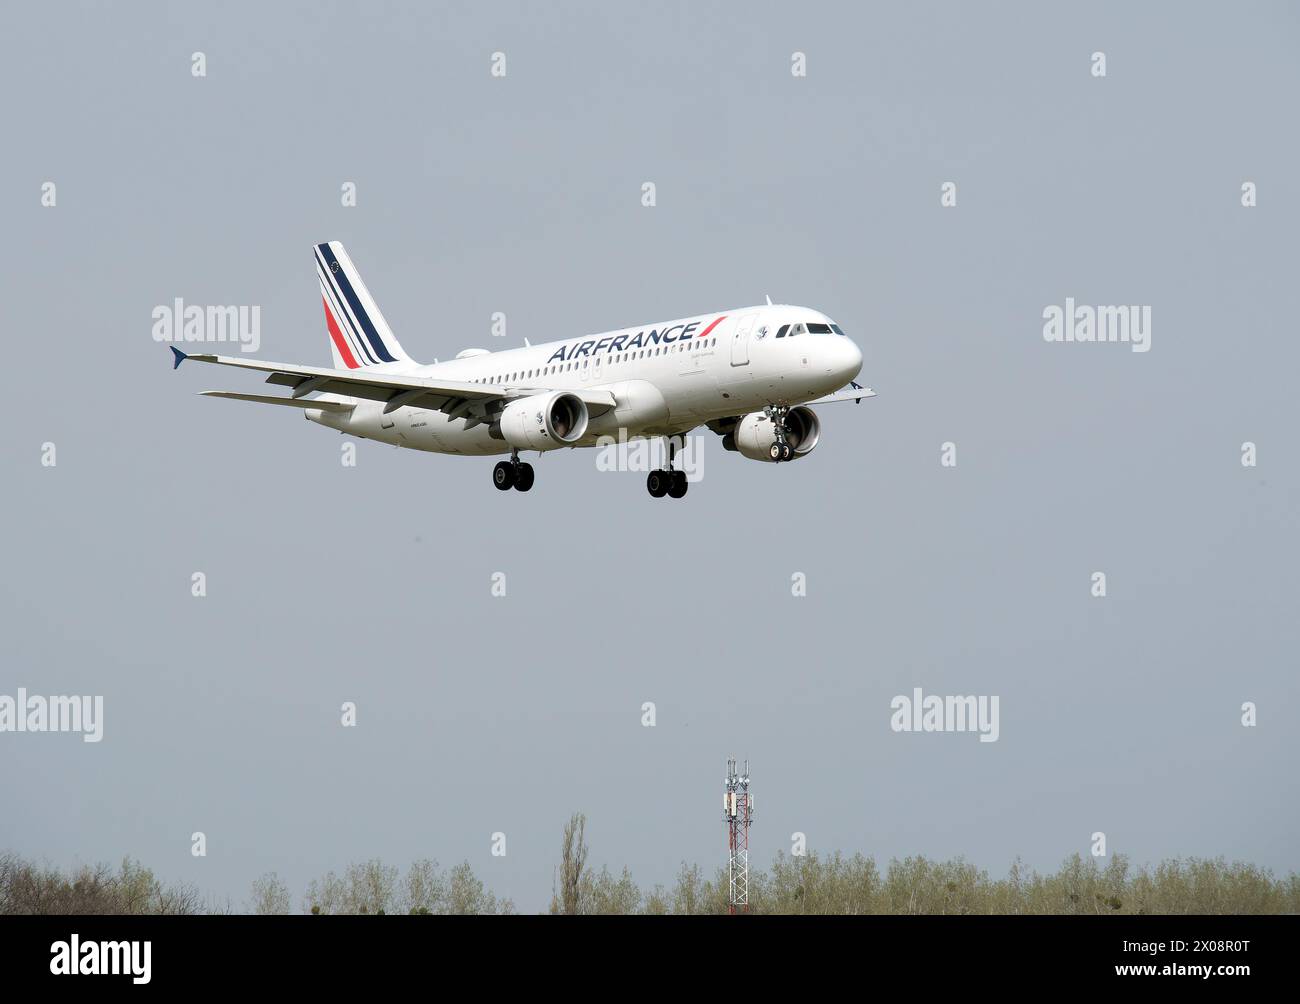 Air France (una de las aerolíneas más grandes del mundo), Airbus A320 avión, Cargo hill, Budapest, Hungría, Magyarország, Europa Foto de stock